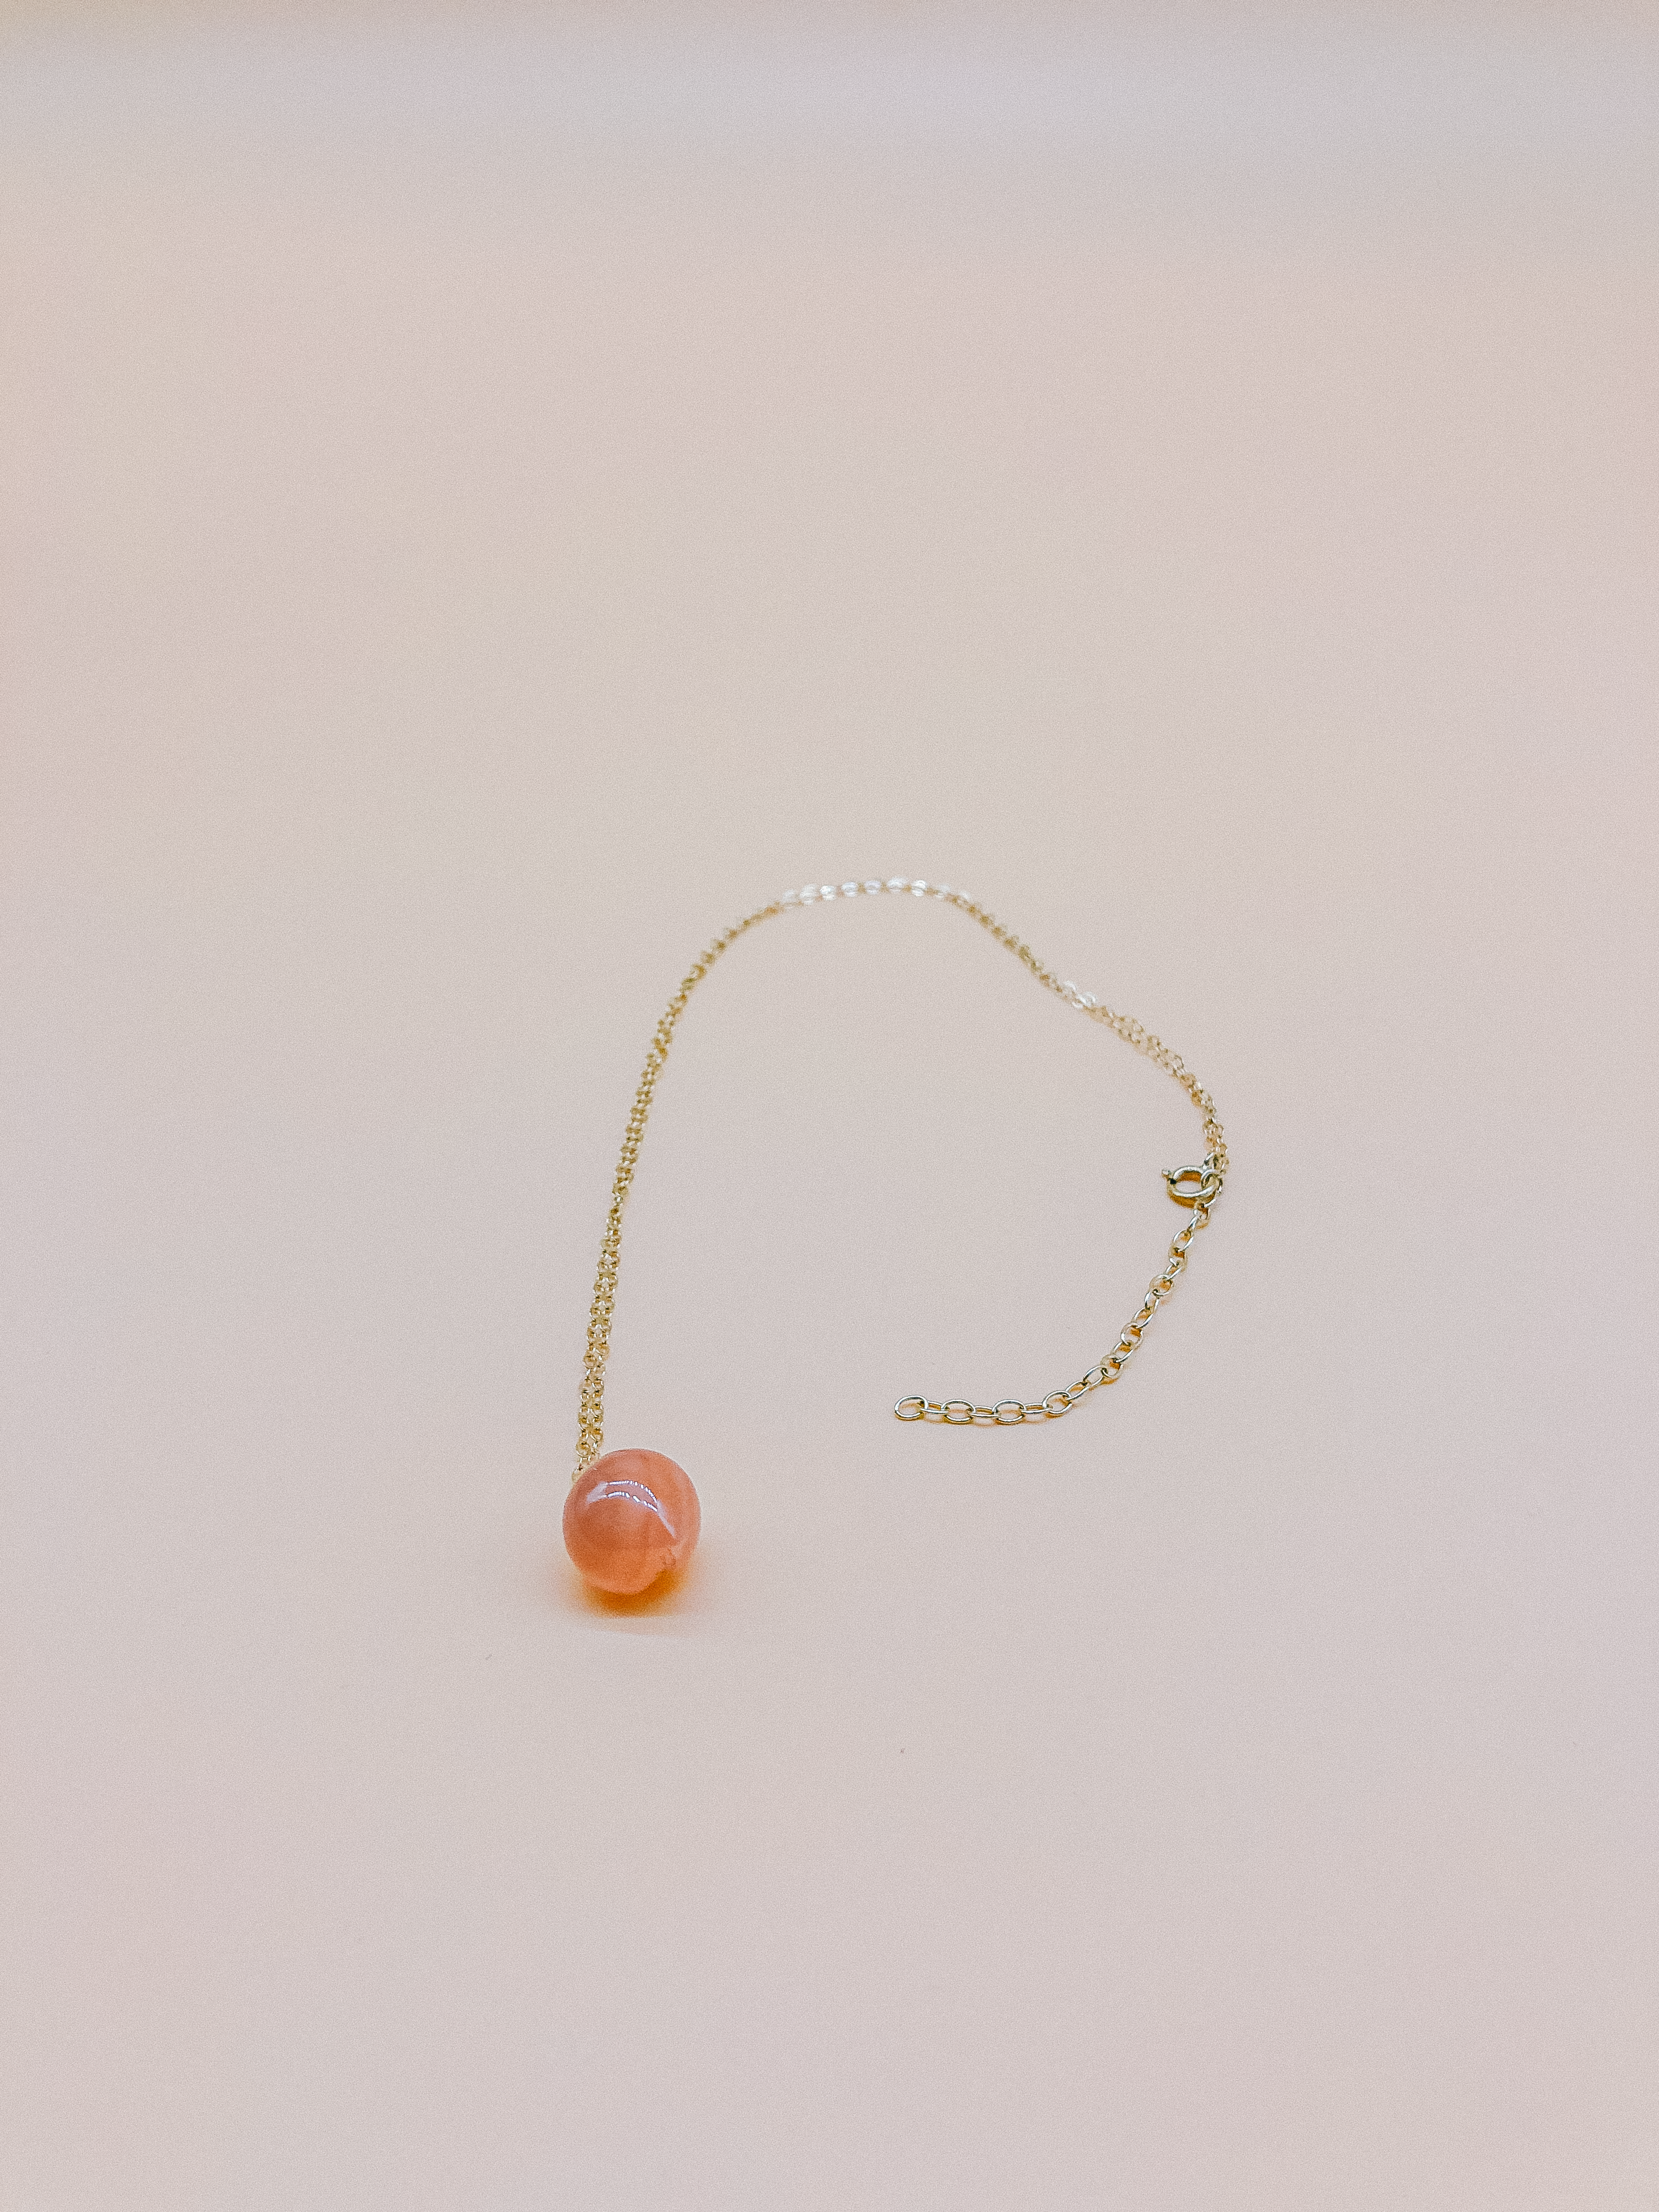 Peach Quartz Necklace by Veronique